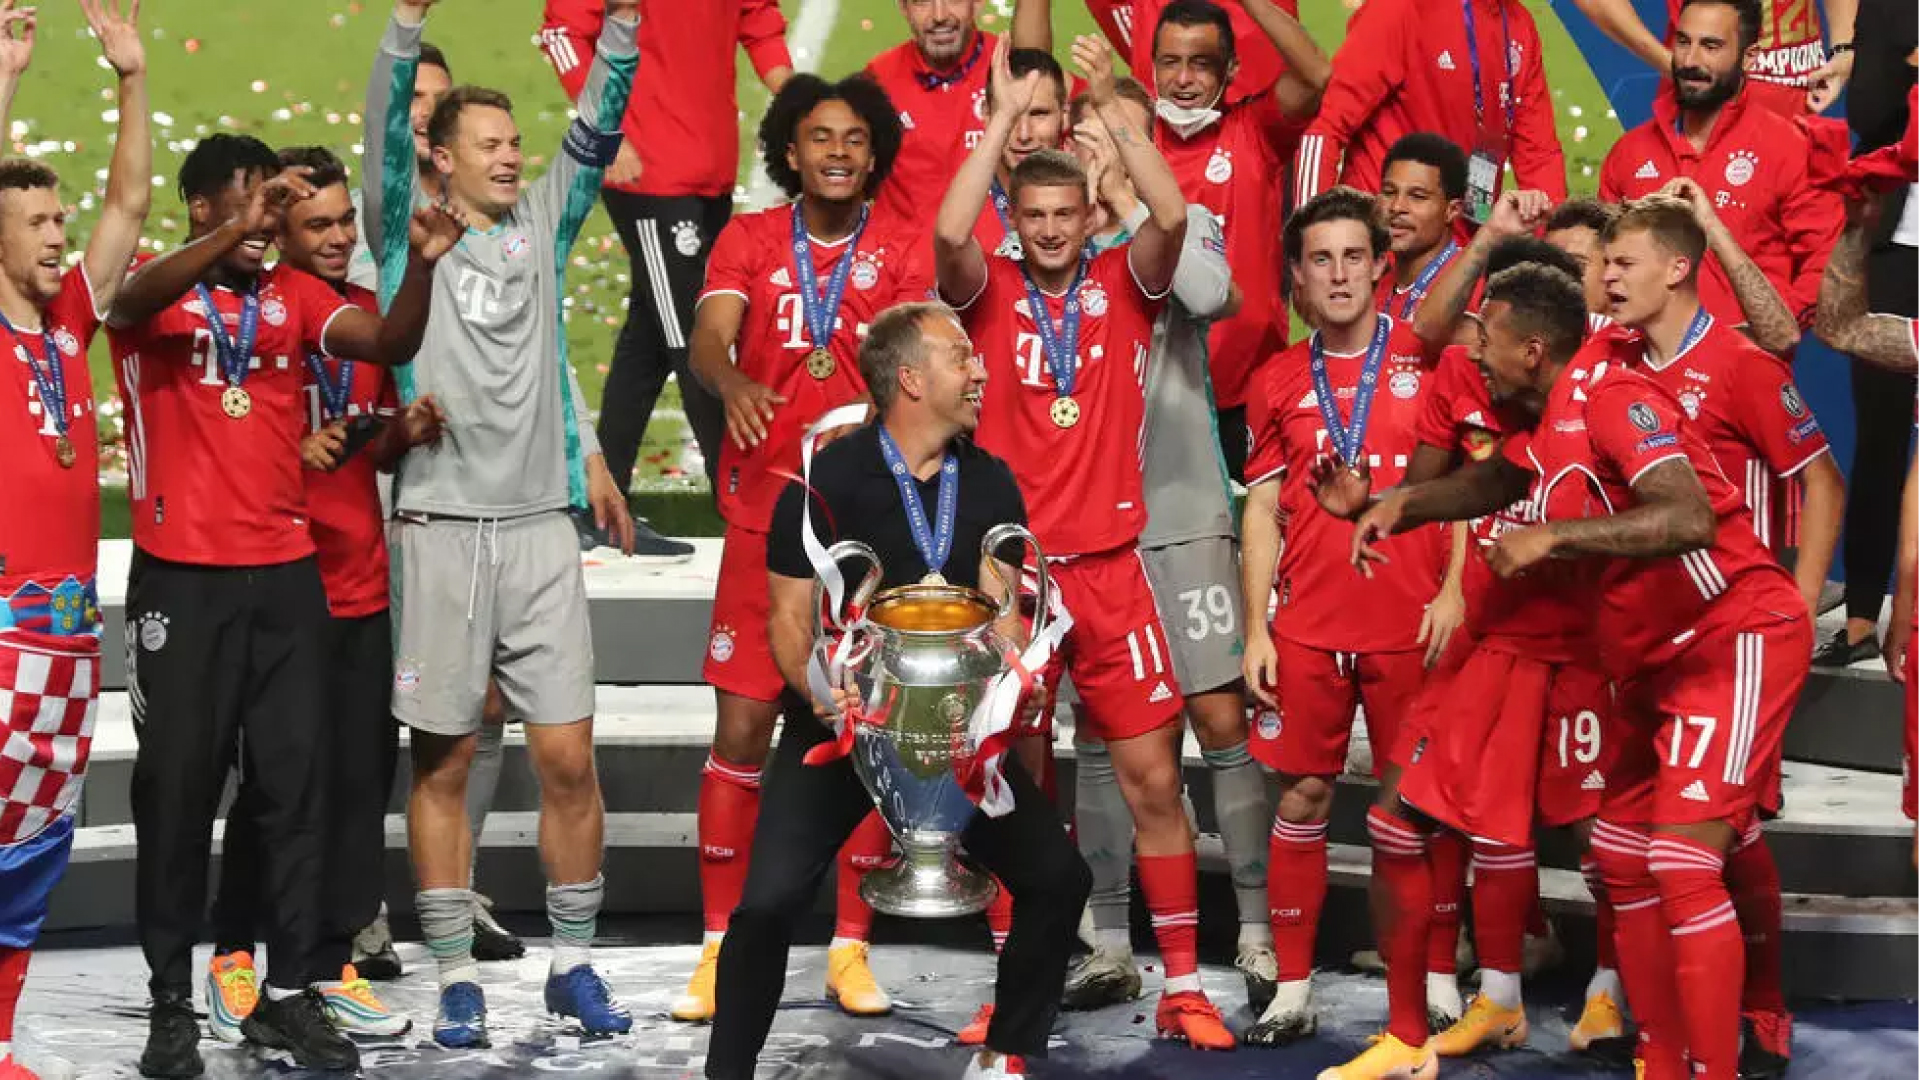 لاعبو بايرن ميونيخ يحتفلون بتتويجهم بلقب دوري أبطال أوروبا في لشبونة في 23 أغسطس الماضي